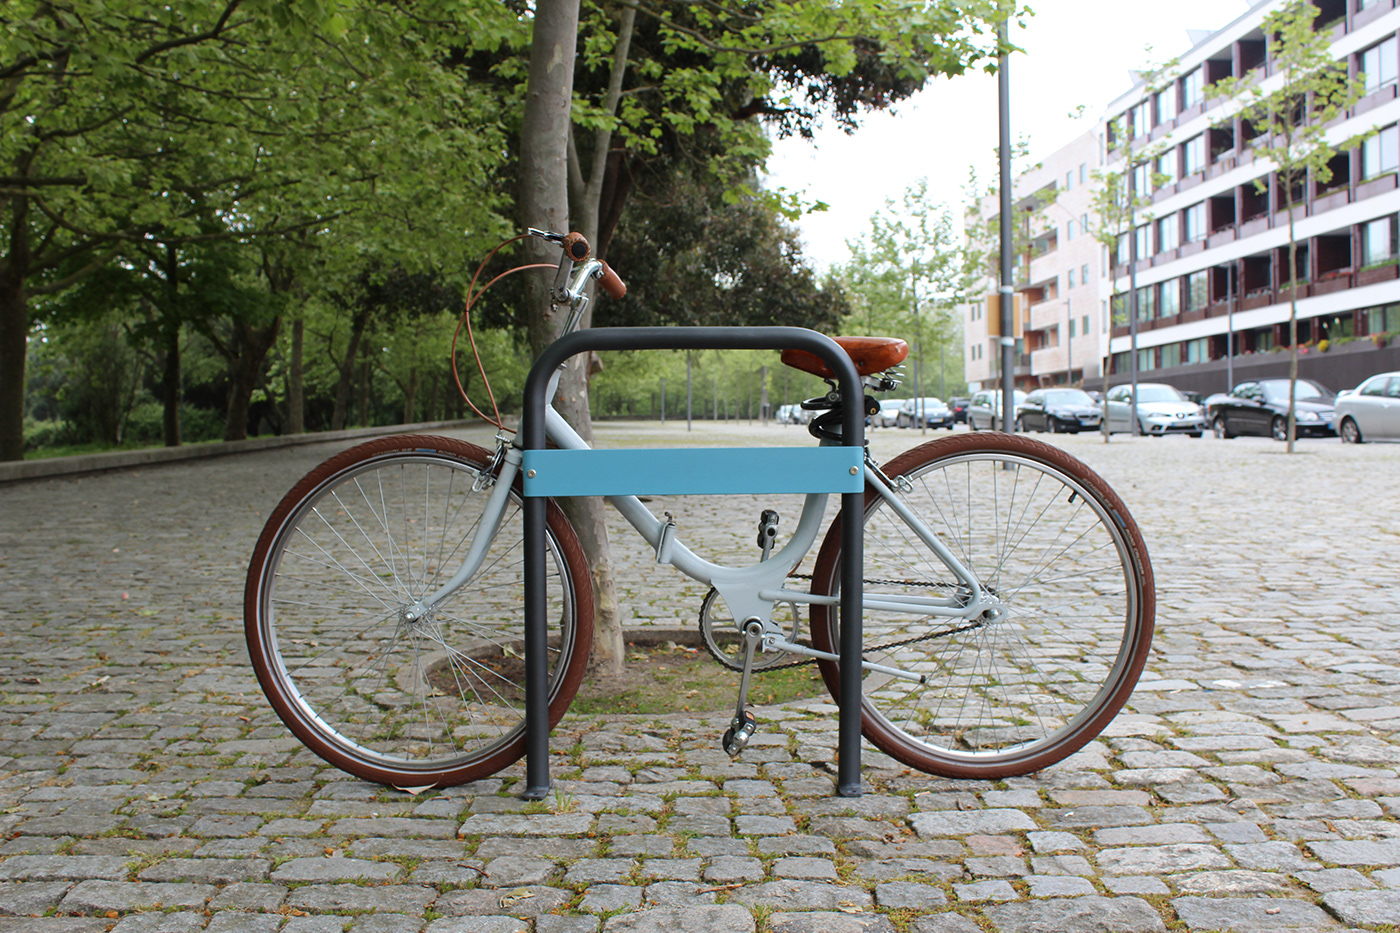 Bicycle Rack litterbin urban bench urban furniture